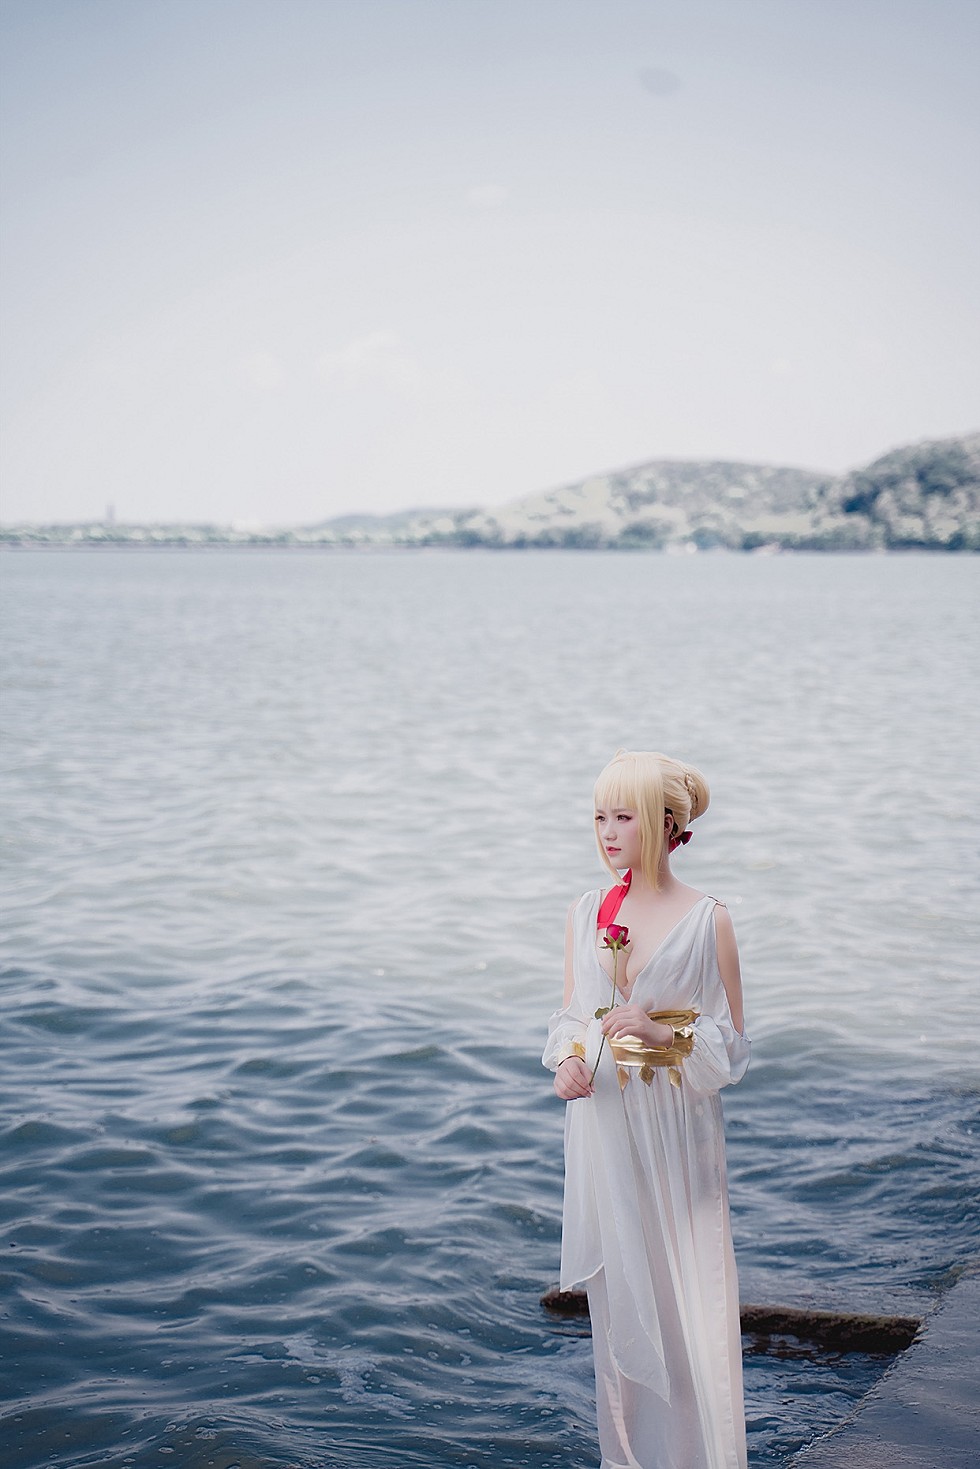 甜美女神户外海边白色低胸裙飘逸秀豪乳难以抵挡诱惑写真39P